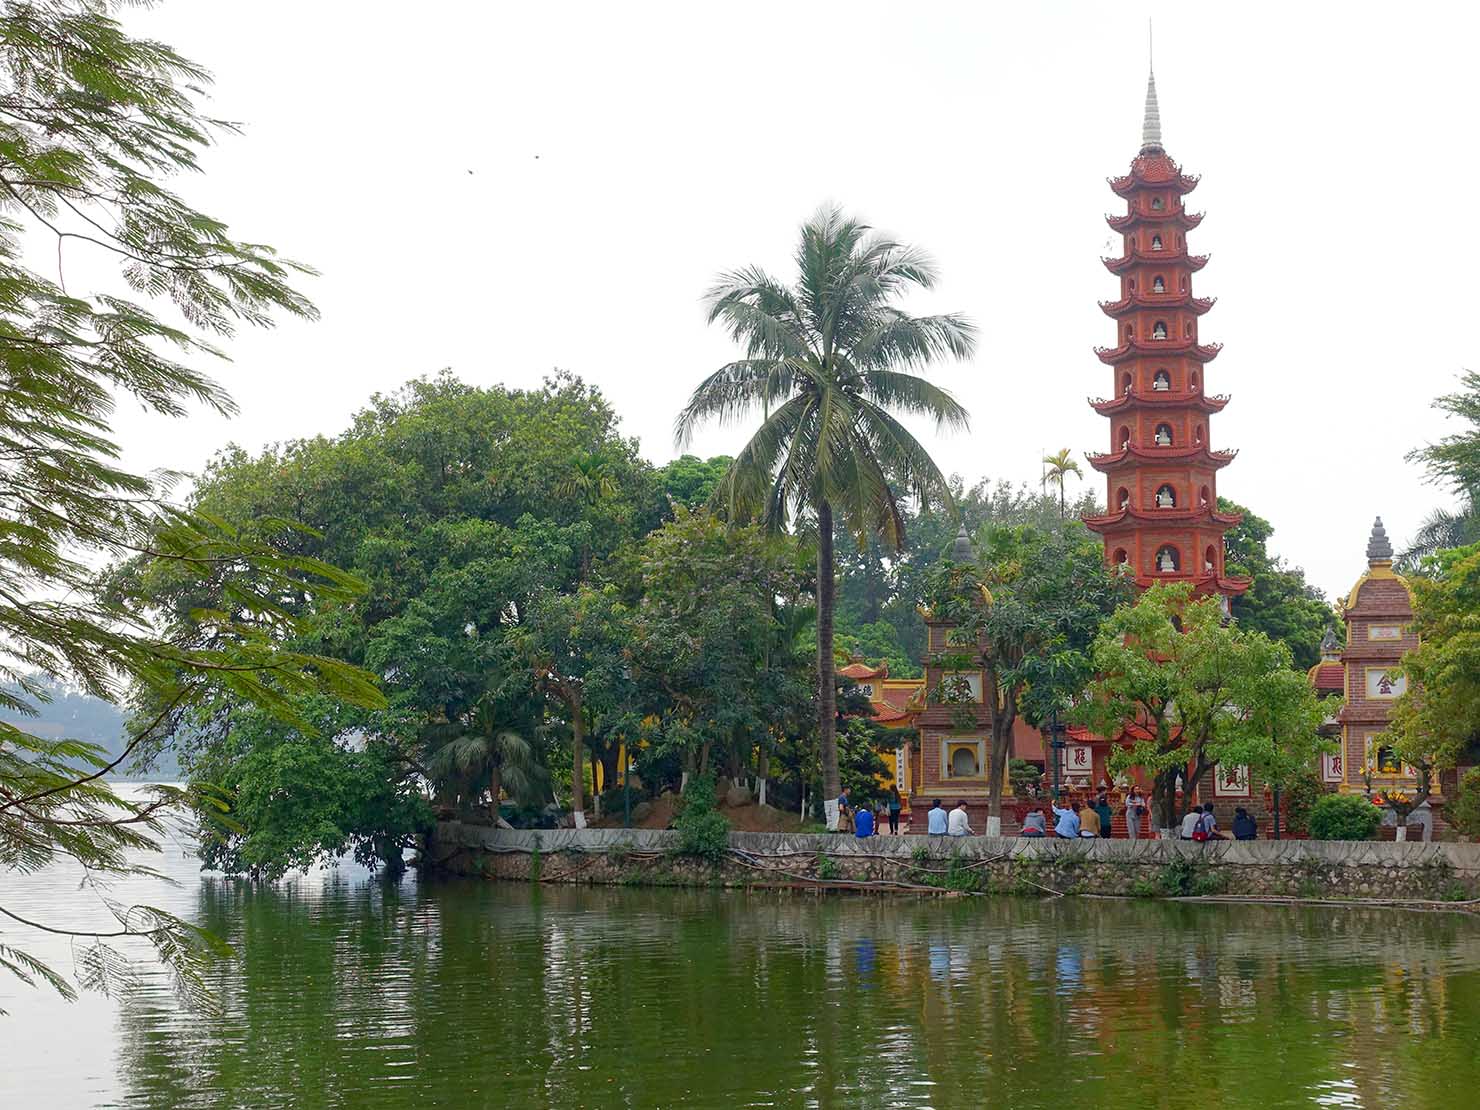 ベトナム・ハノイのタイ湖にある観光スポット「鎮国寺」の外観